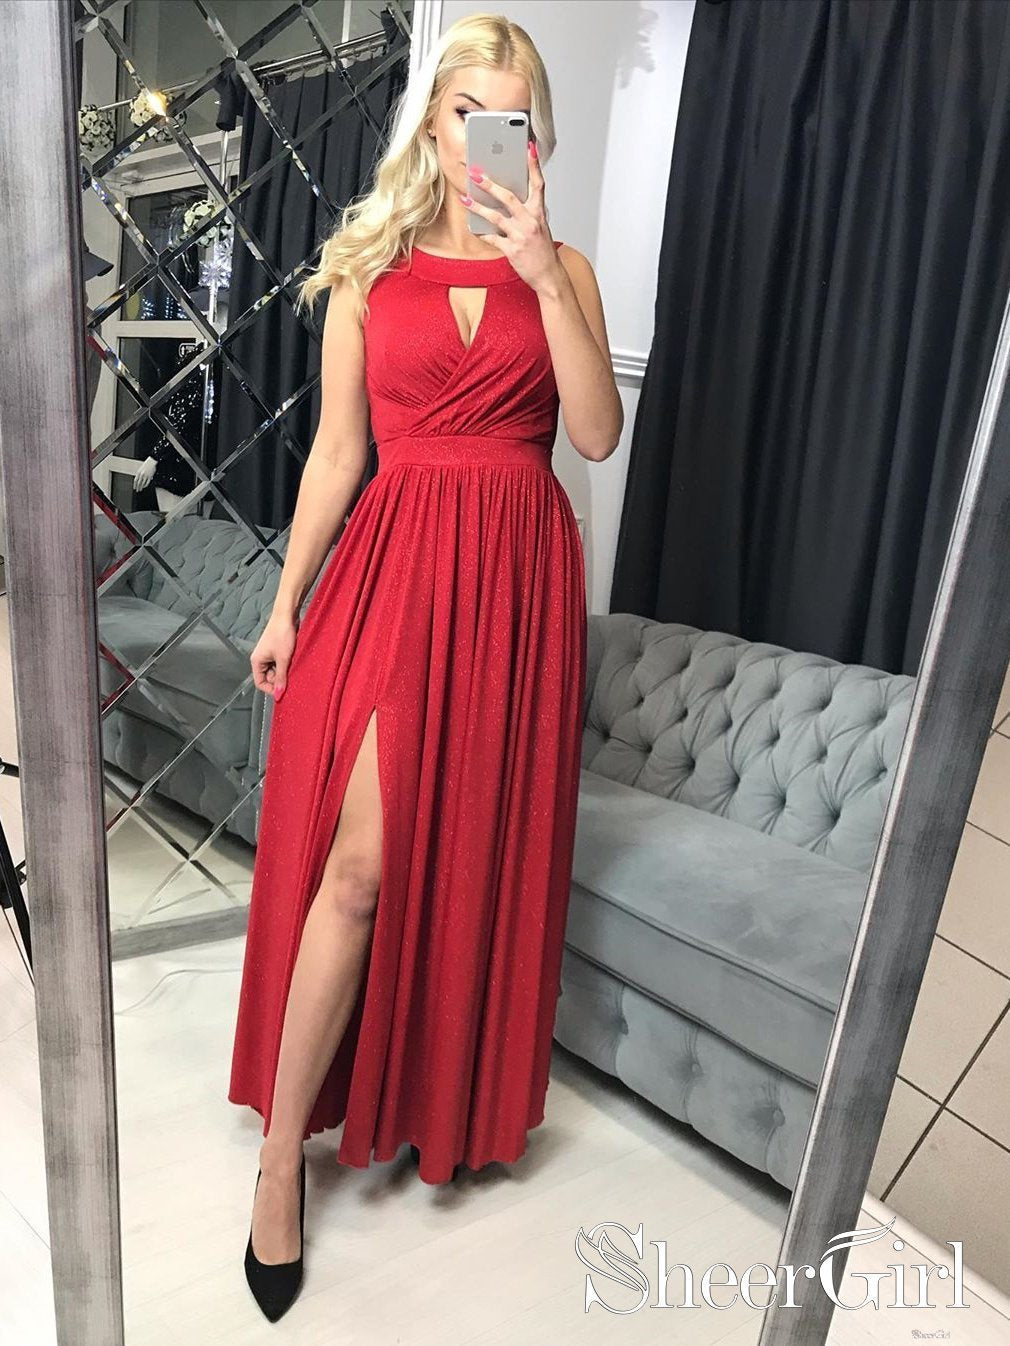 Chic Red Sequin Prom Dresses Halter Neck Backless High Slit Party Dres –  Dbrbridal